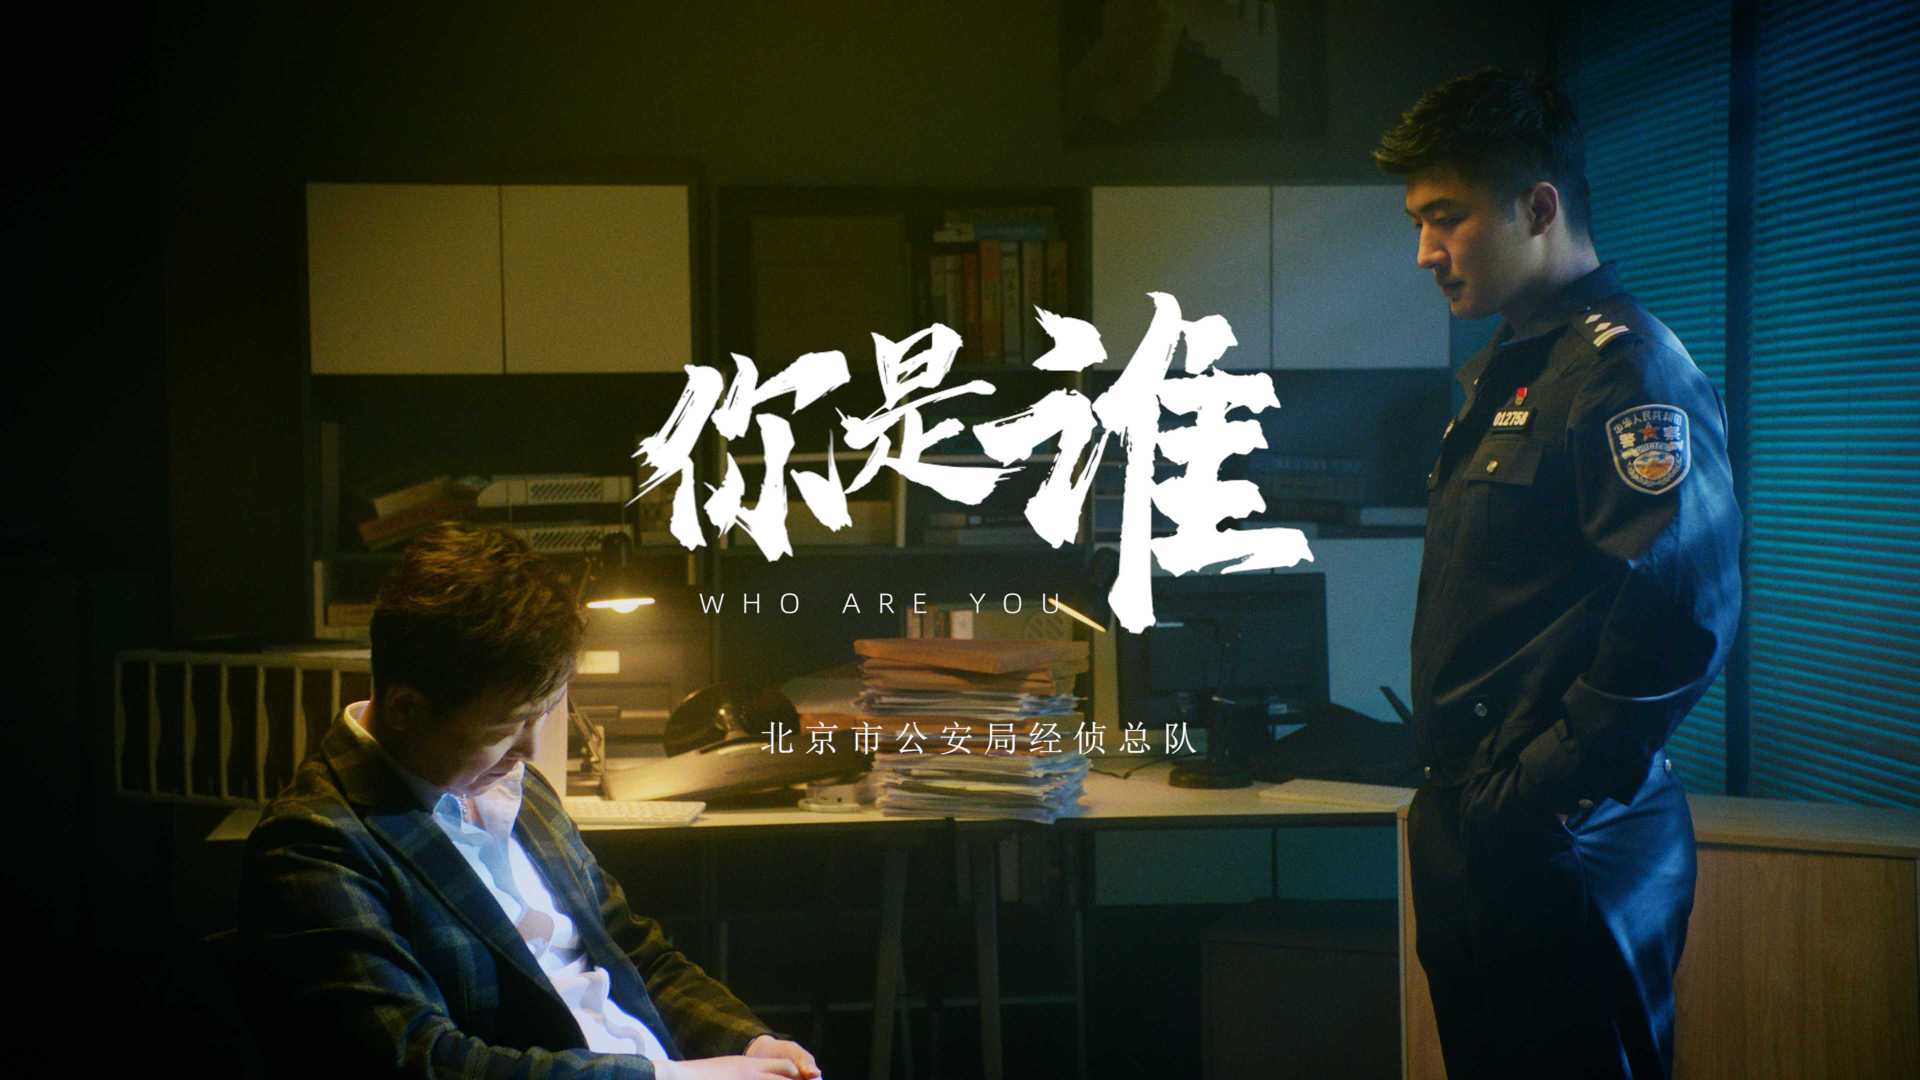 【5.15】《你是谁》北京公安经侦总队宣传片 | 与民同心，为您守护